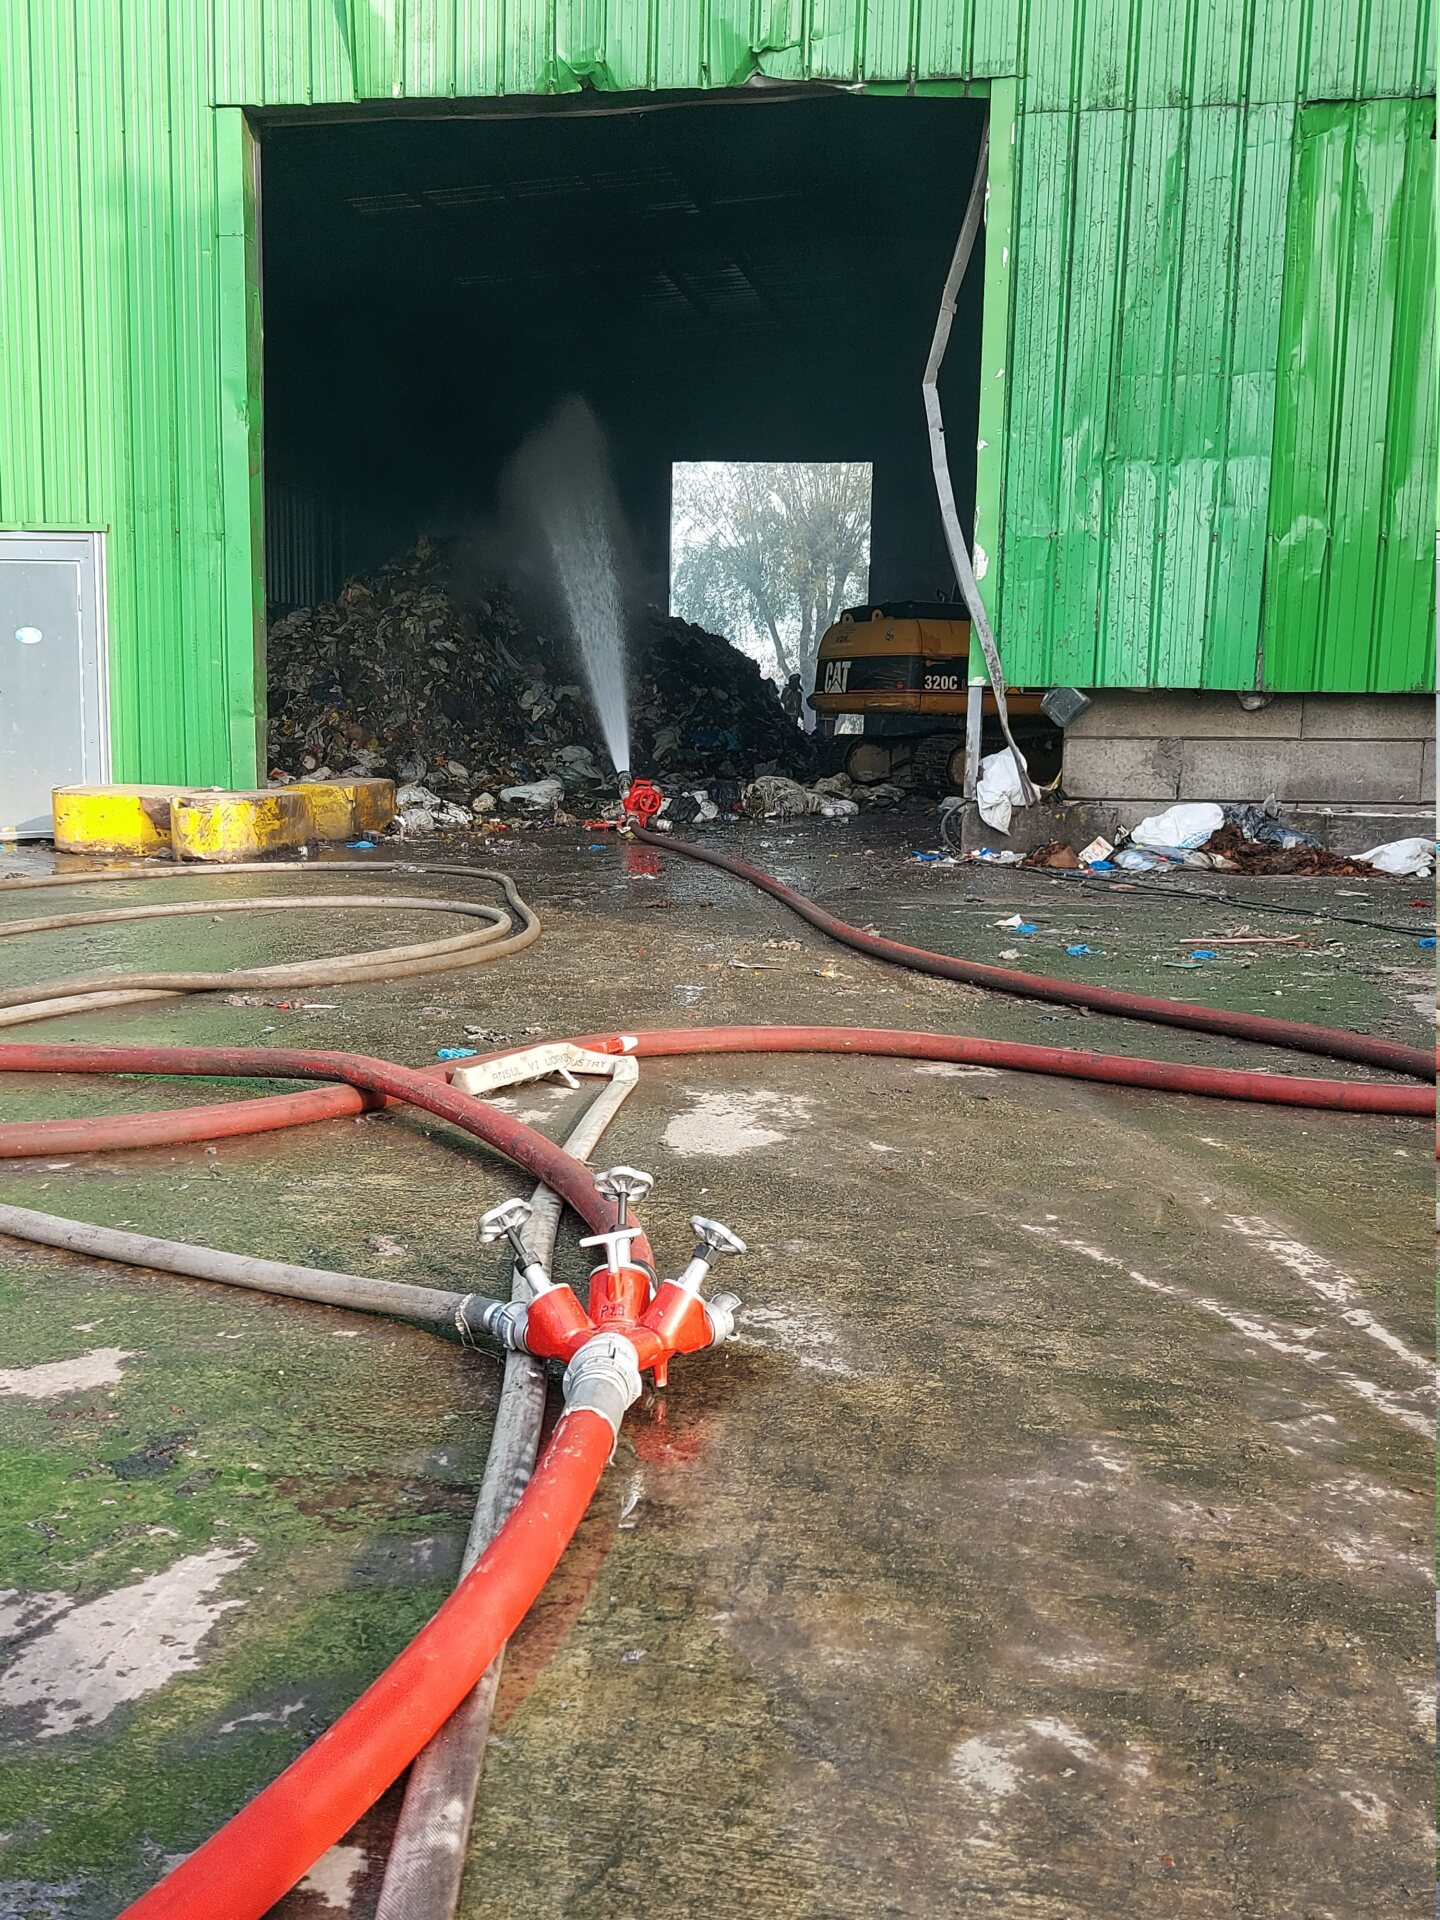 Violent incendie sur le site d'incinération de déchets de Virginal (23-11-2002 + photos) M2020127